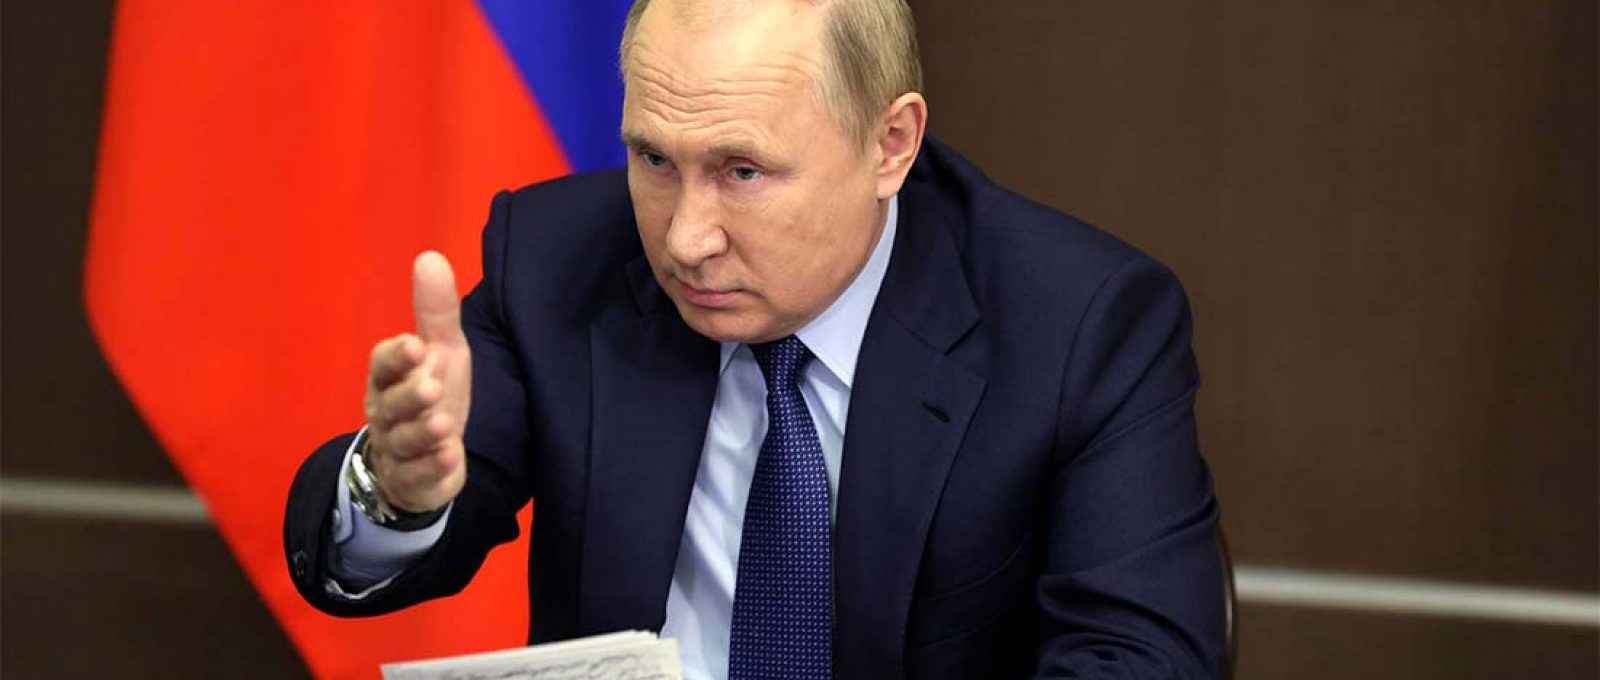 O presidente russo, Vladimir Putin, participa de uma reunião com membros do governo por meio de um link de vídeo em Sochi, Rússia, 24 de novembro de 2021 (Reuters).